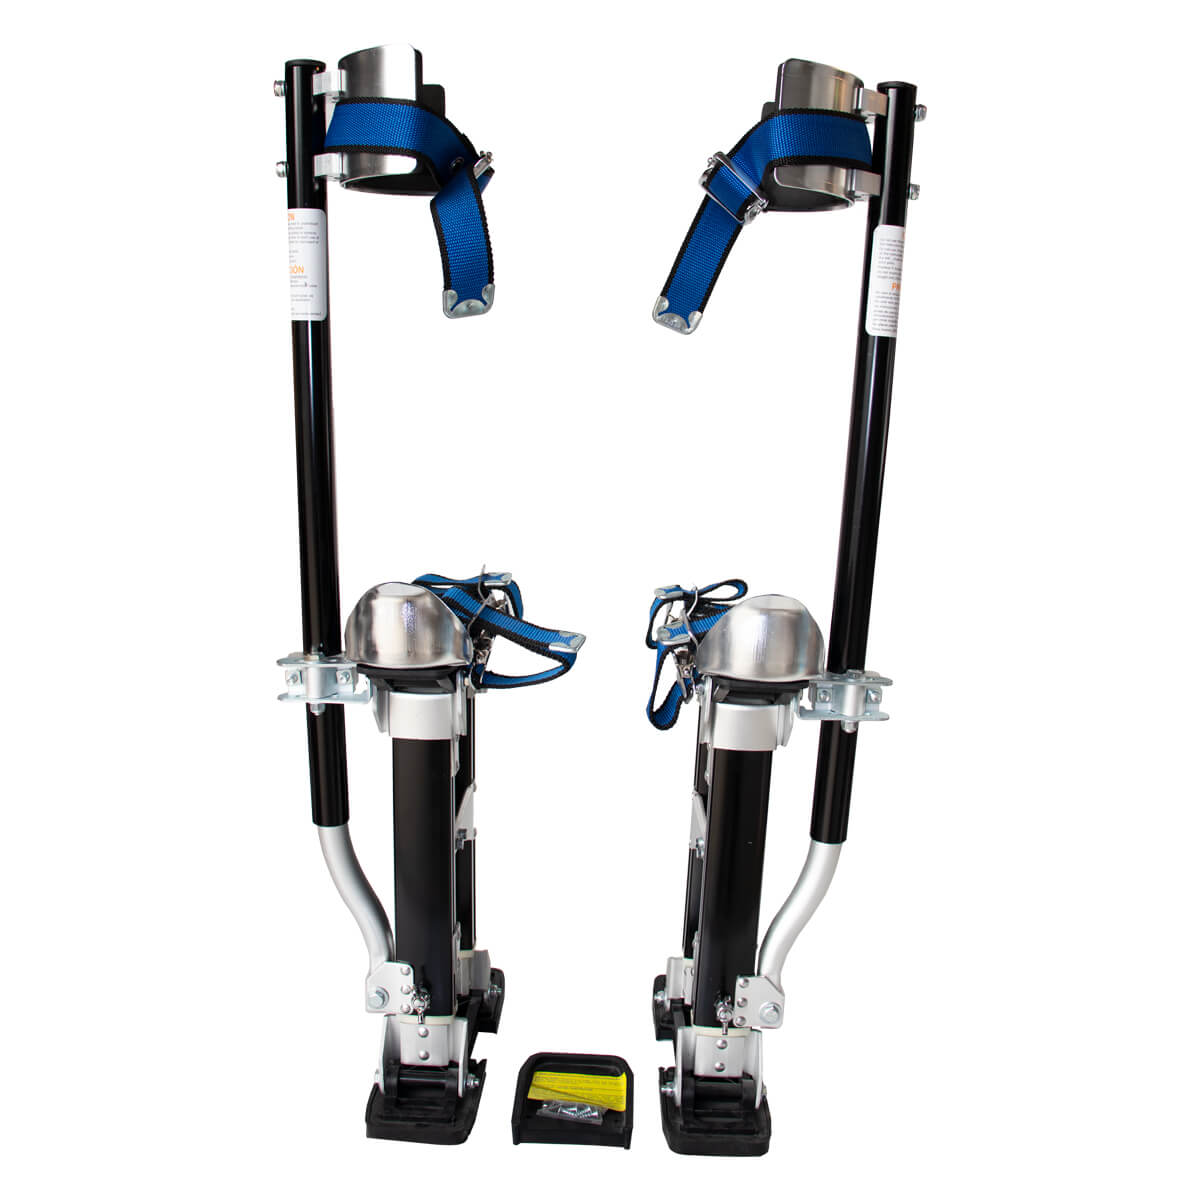 Stilts Adjustable Large 600-1000mm